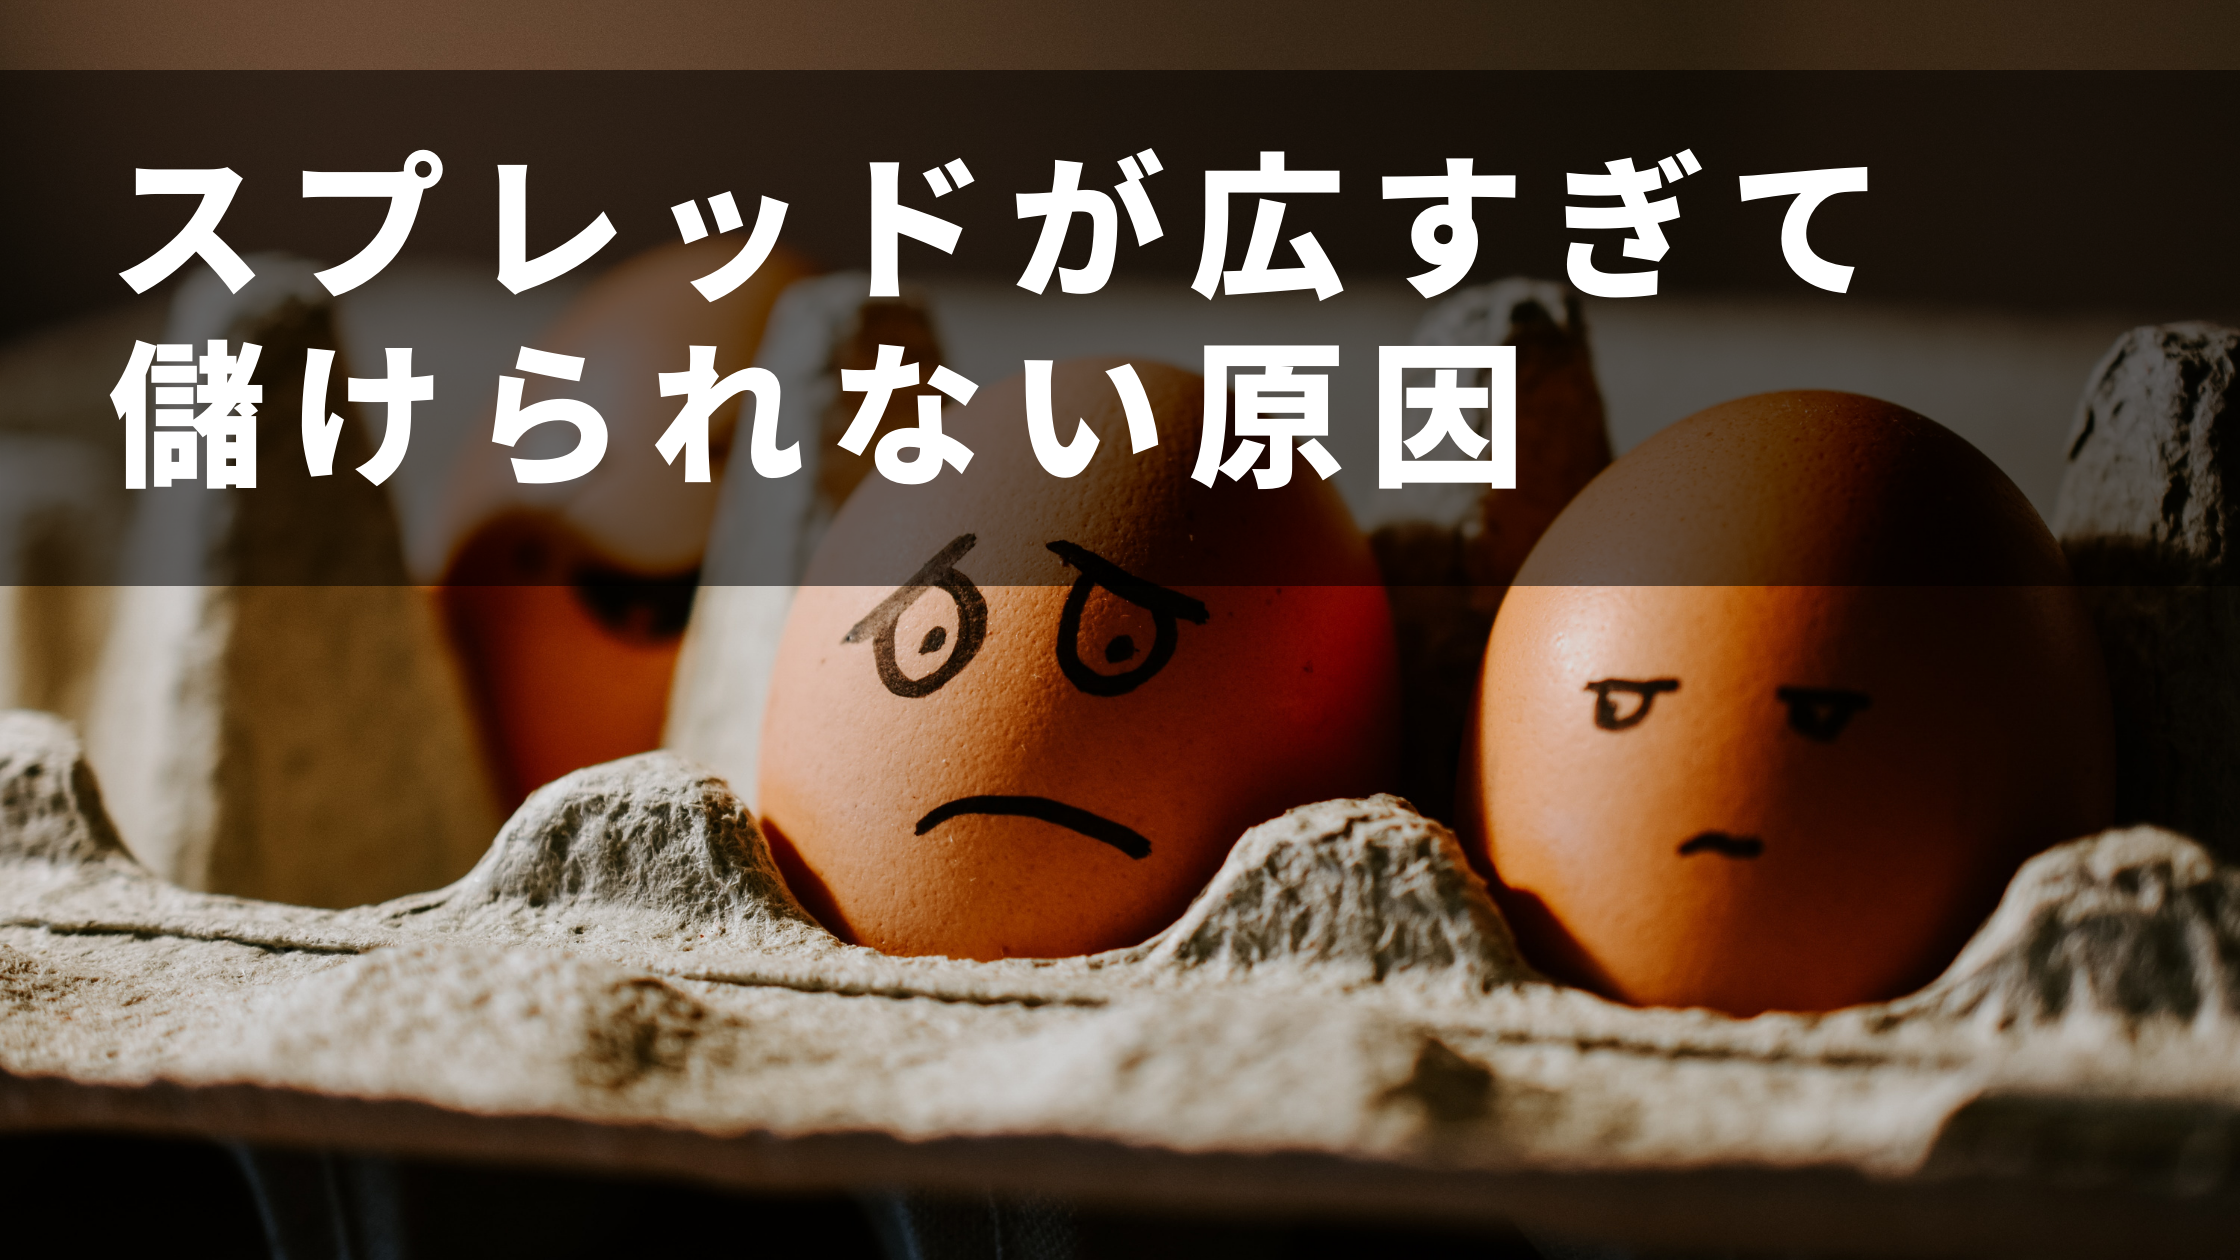 悲しい表情が描かれた卵の写真